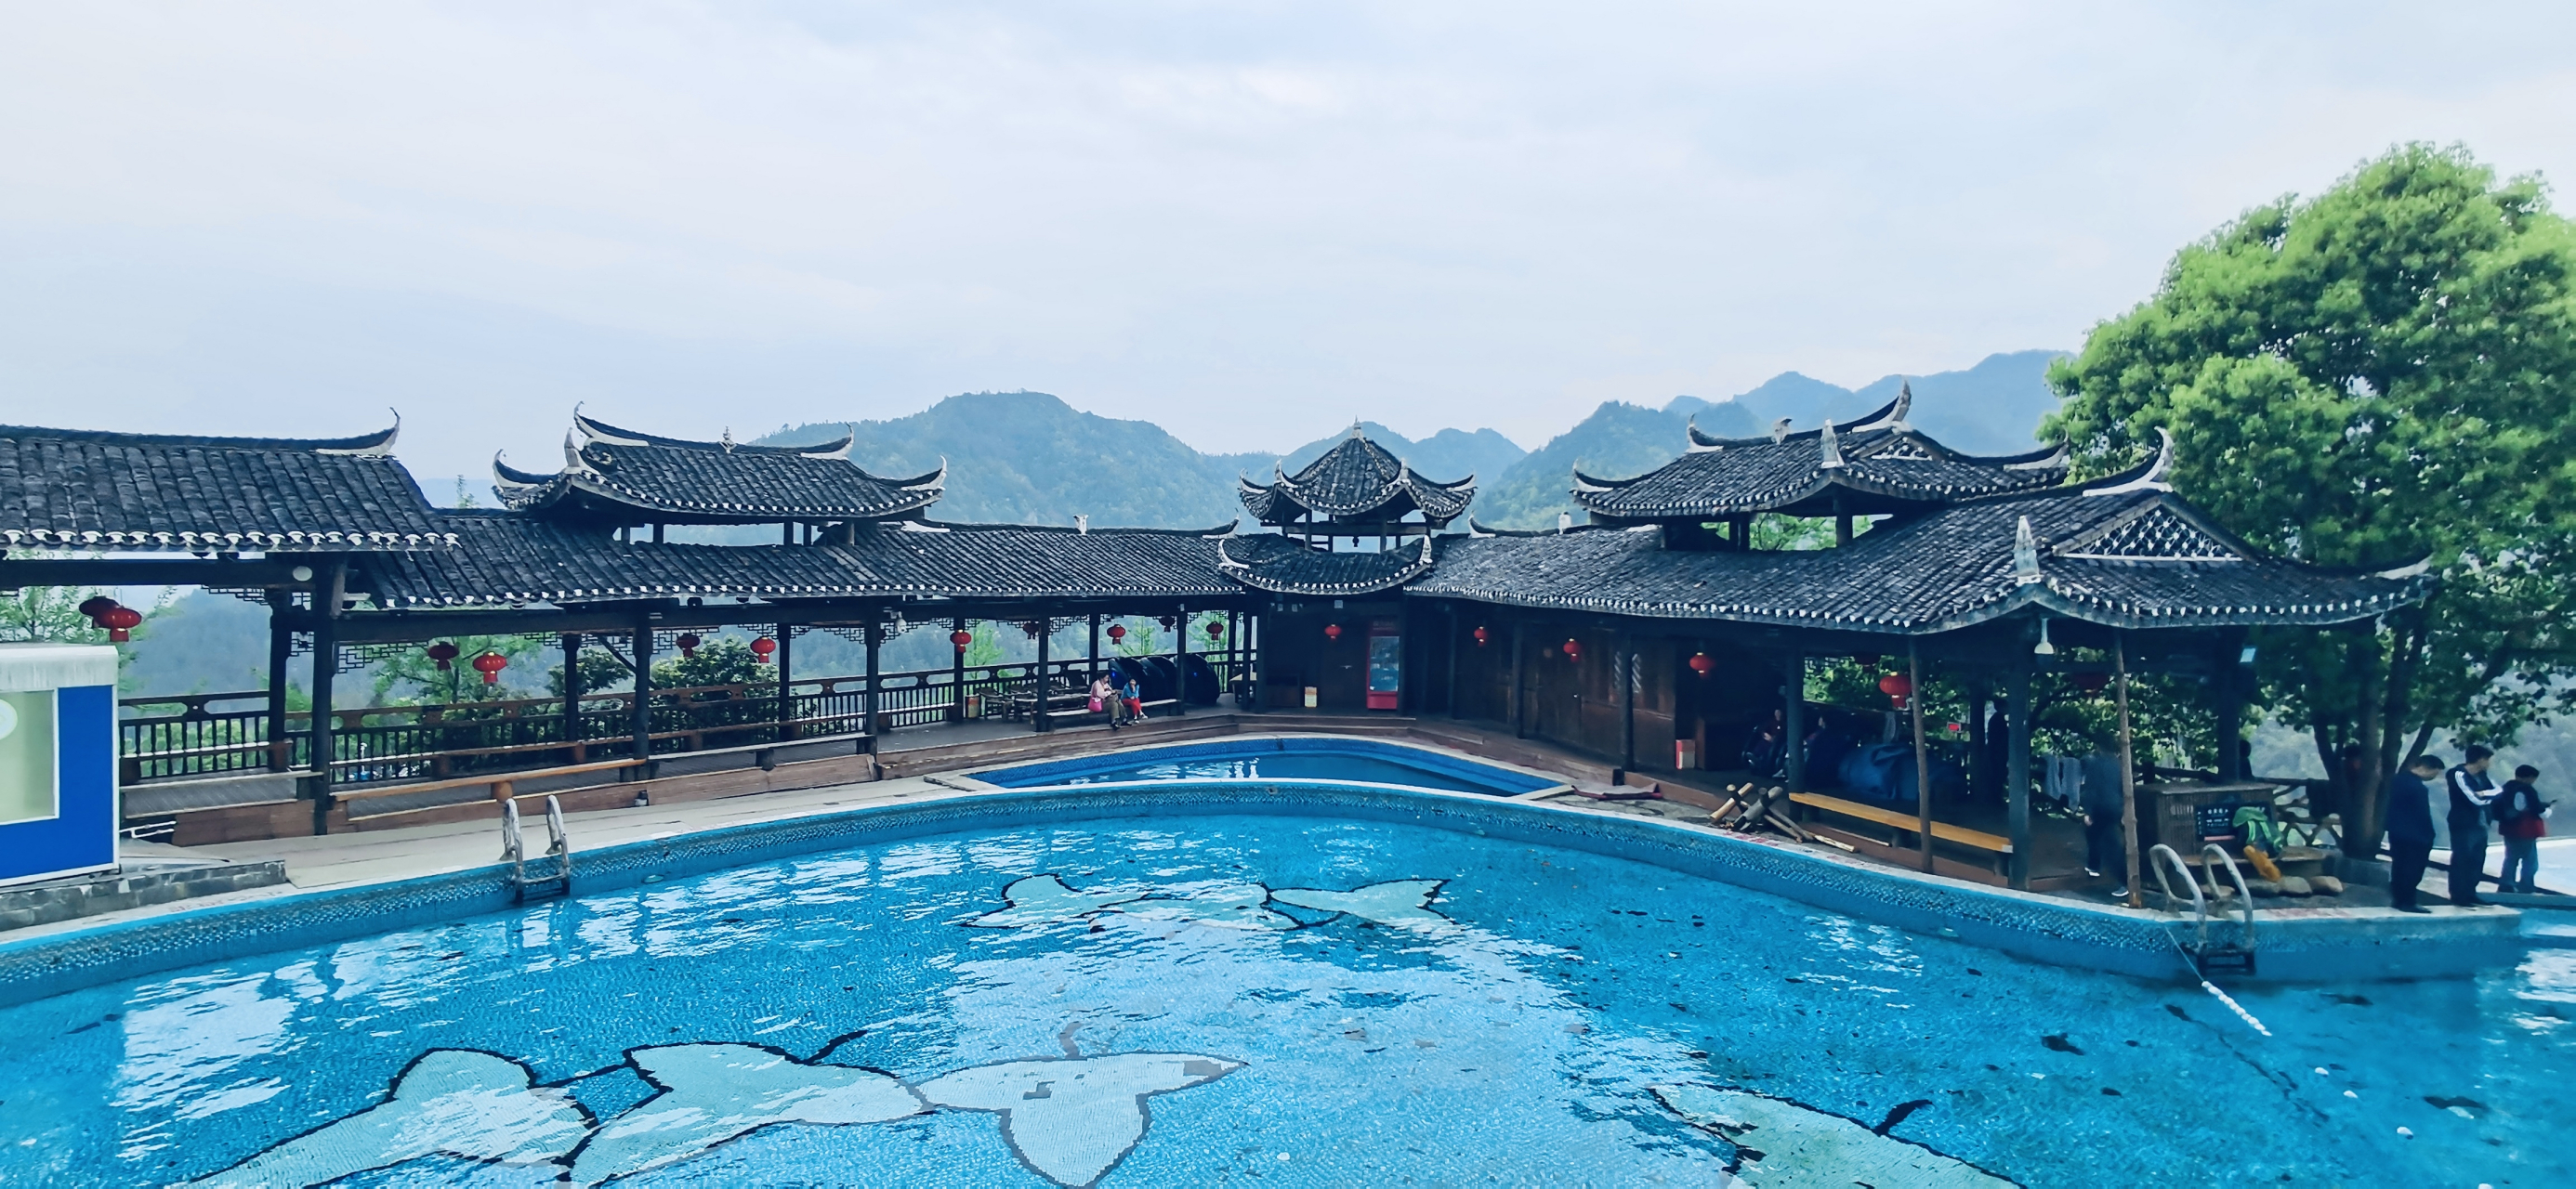 怀化溆浦旅游景点图片